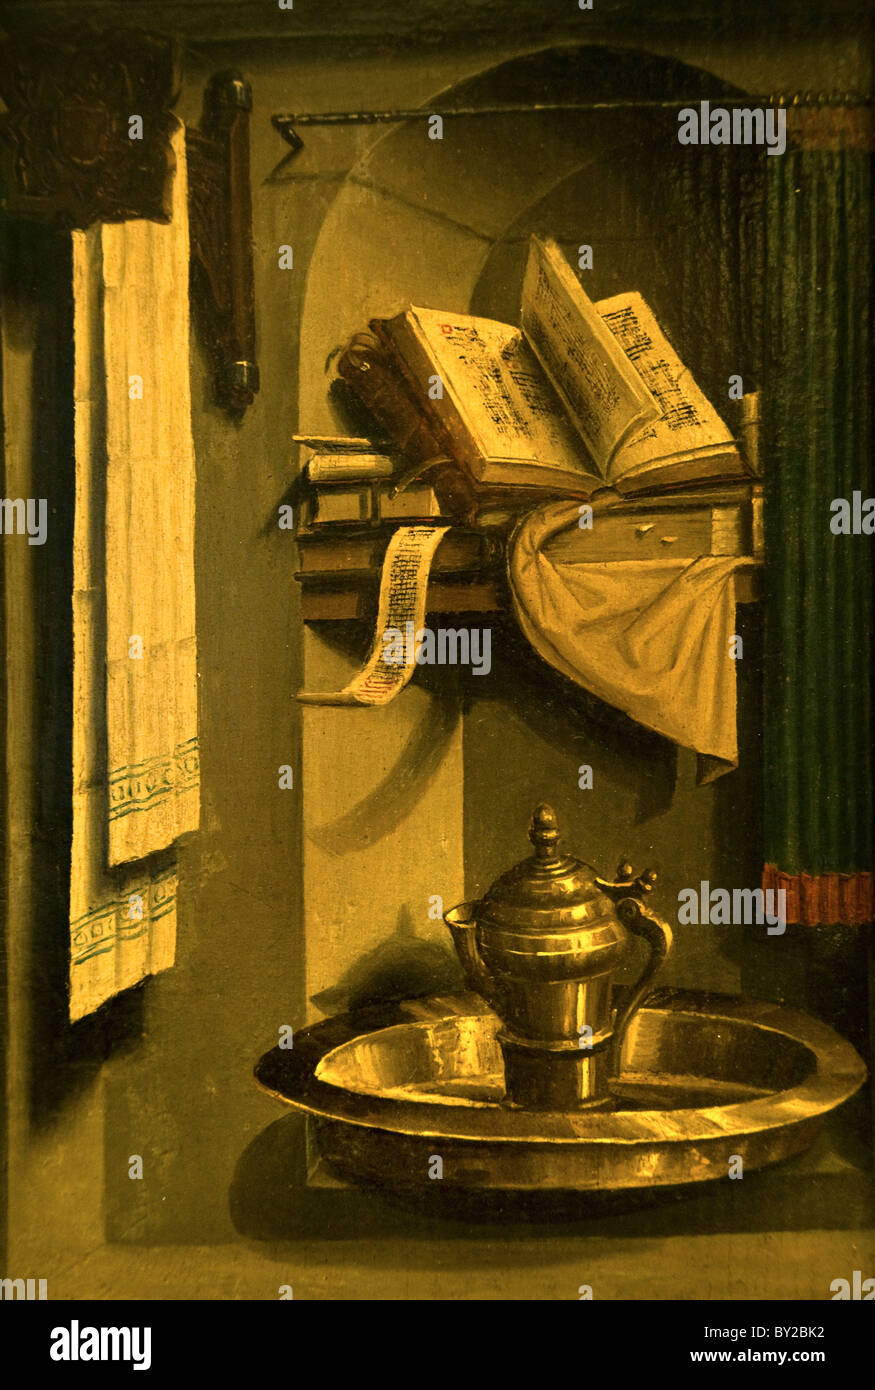 Ewer Libros y lavabo en un nicho 1470 pintura medieval Edad Media Holanda Holandesa Foto de stock